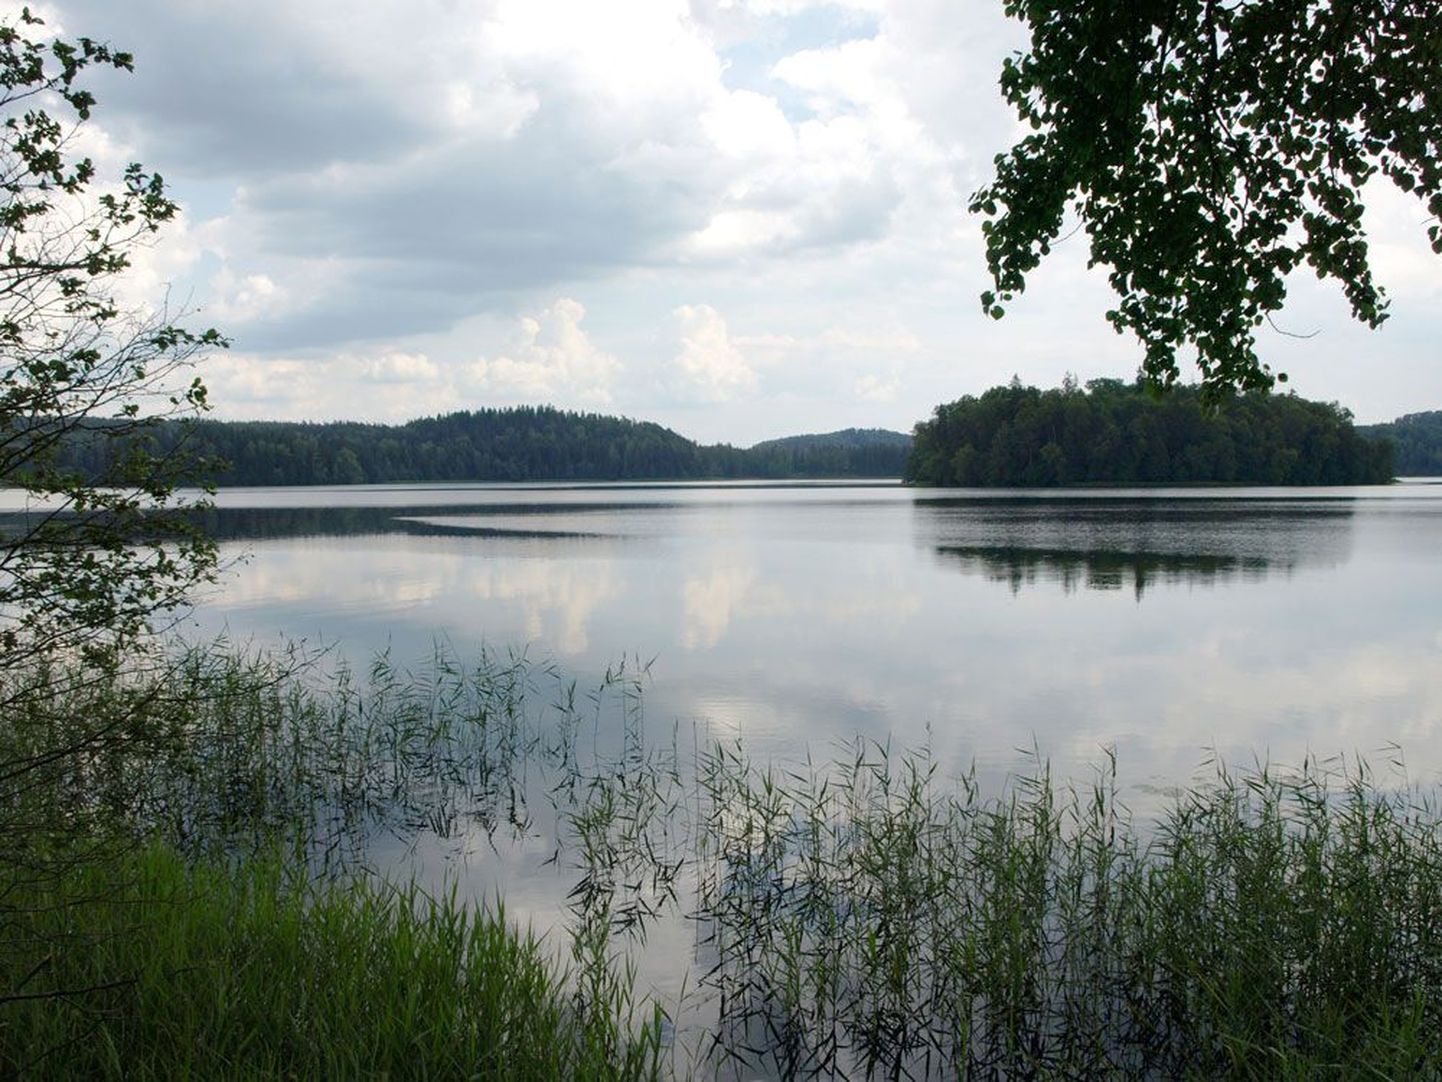 Viie saarega Pühajärv: kahtlemata Eesti kaunimaid järvi. Järve ümber vonkleb 13 km pikkune valge-kollase-valge märgistusega matkarada ning kulgeb 11 km pikkune suurepäraselt asfalteeritud ring.